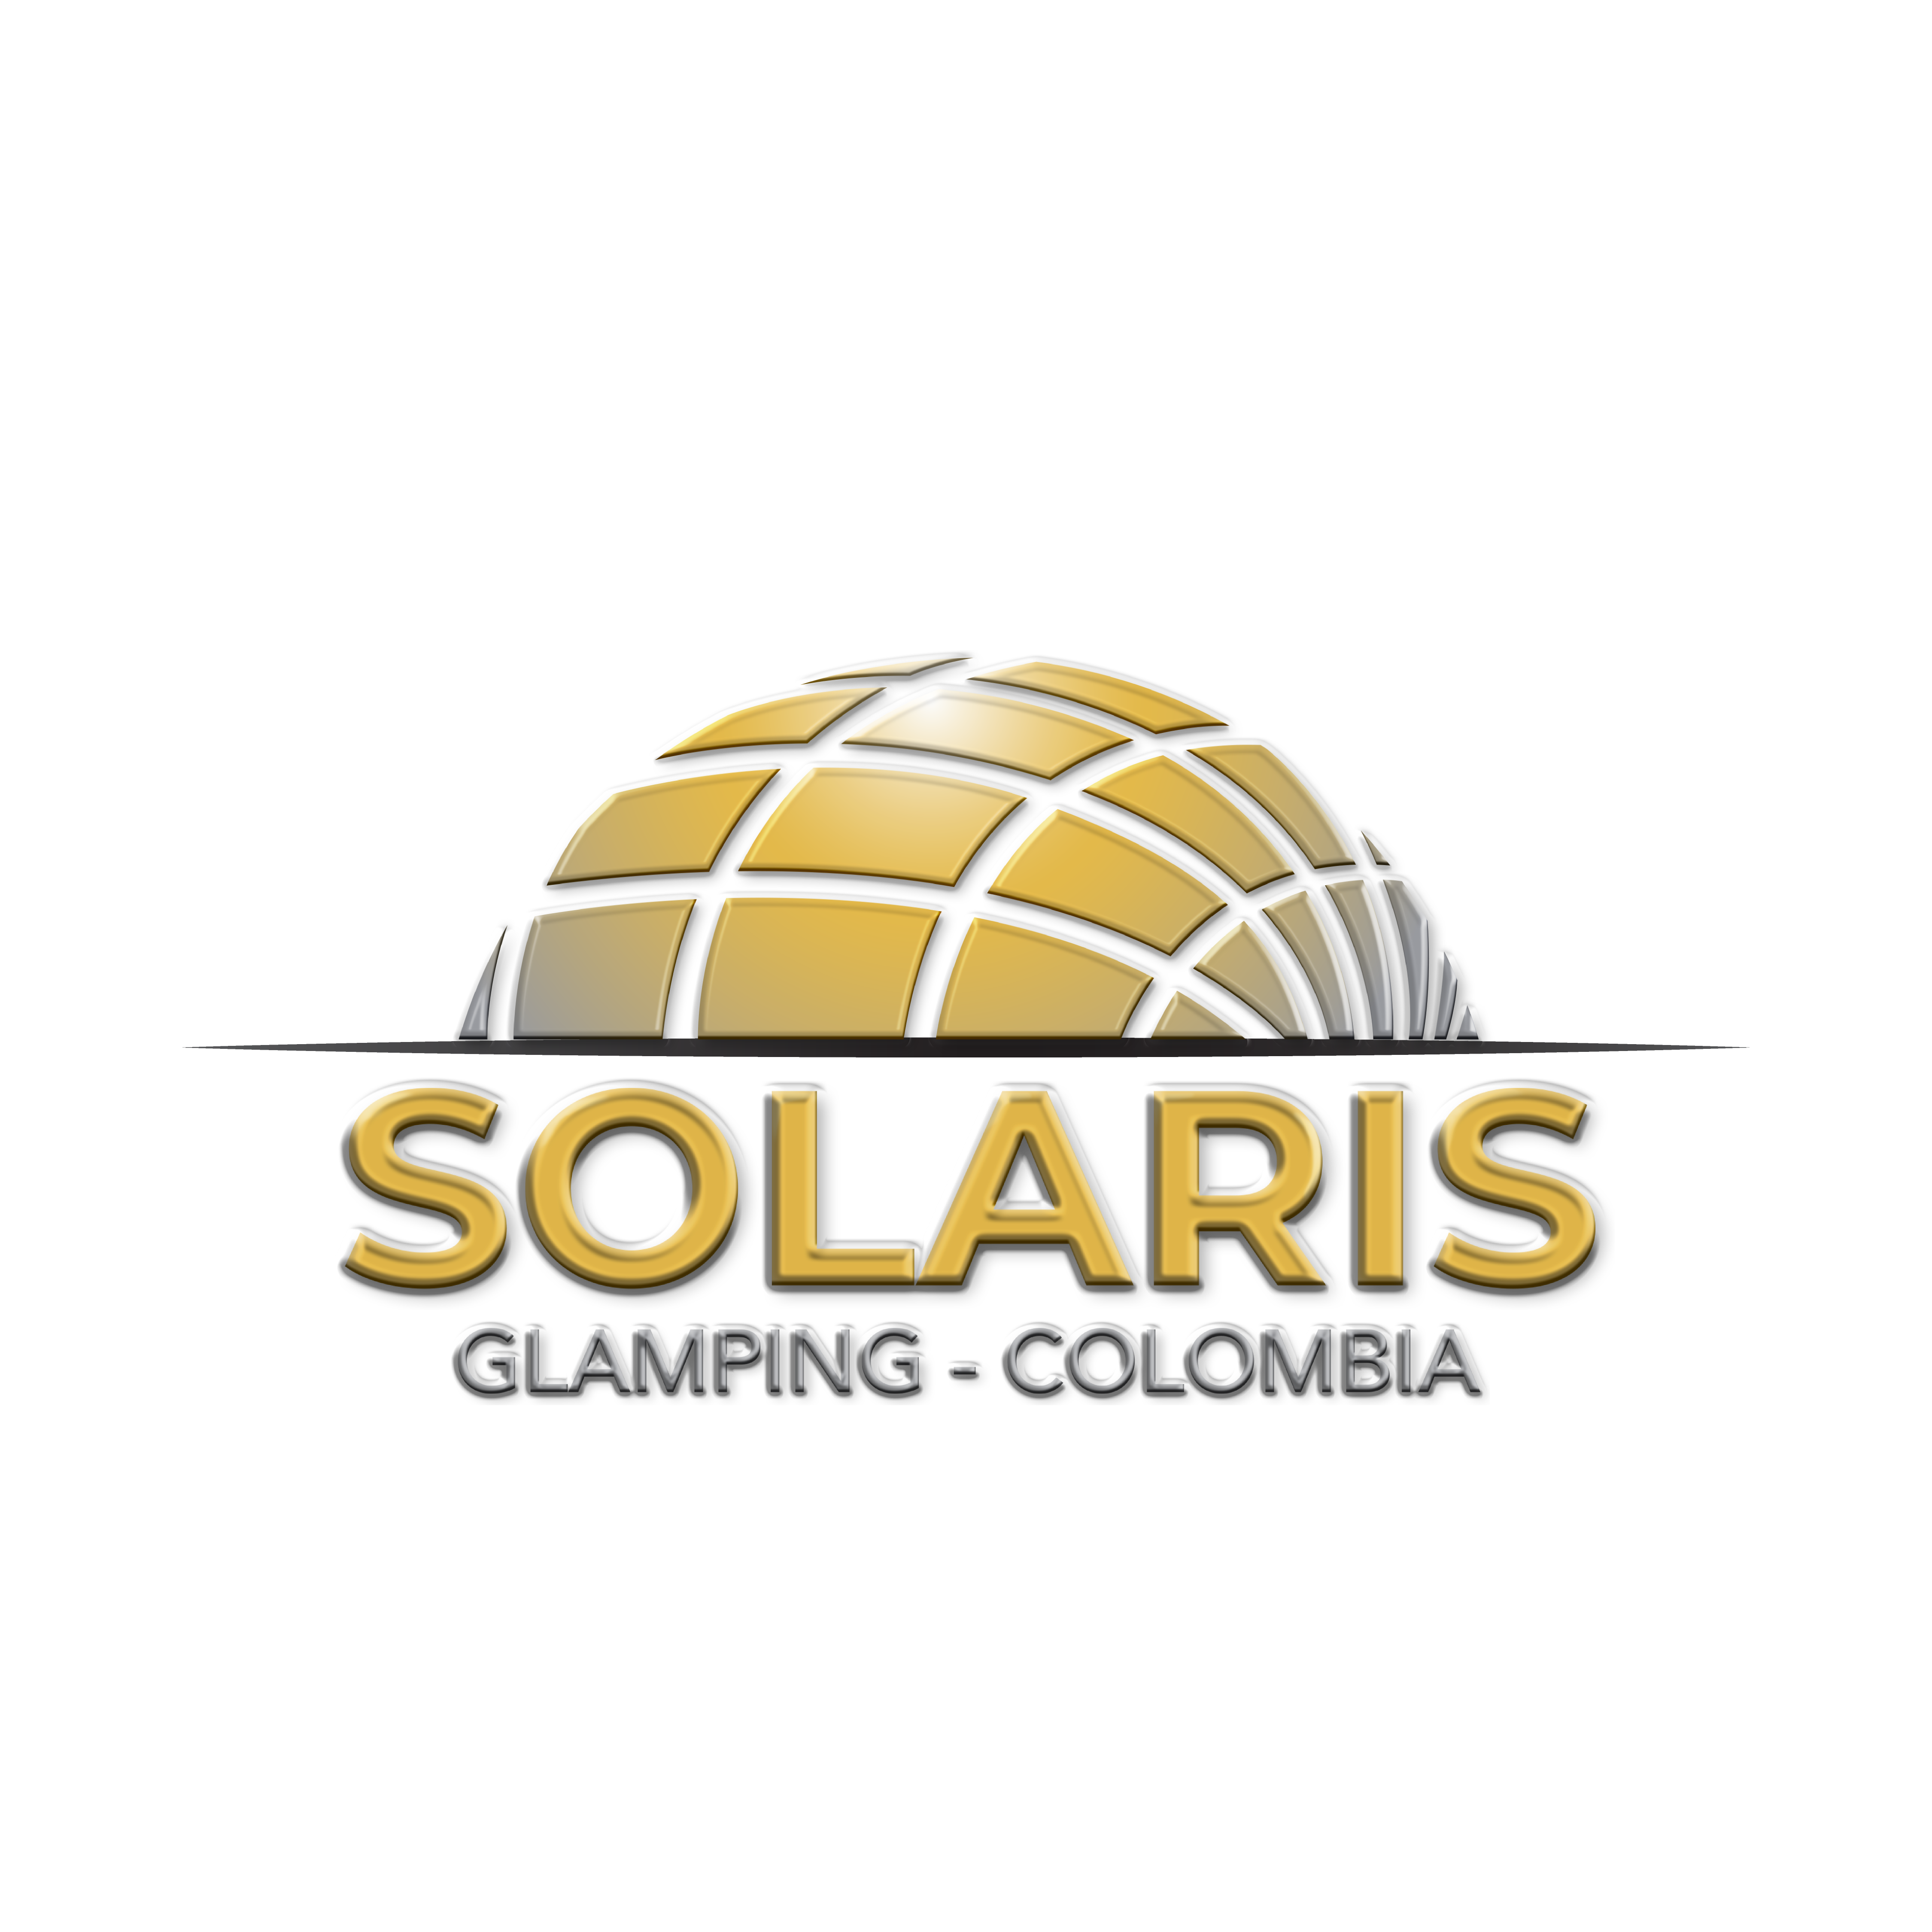 Solaris Colombia LOGO_Black